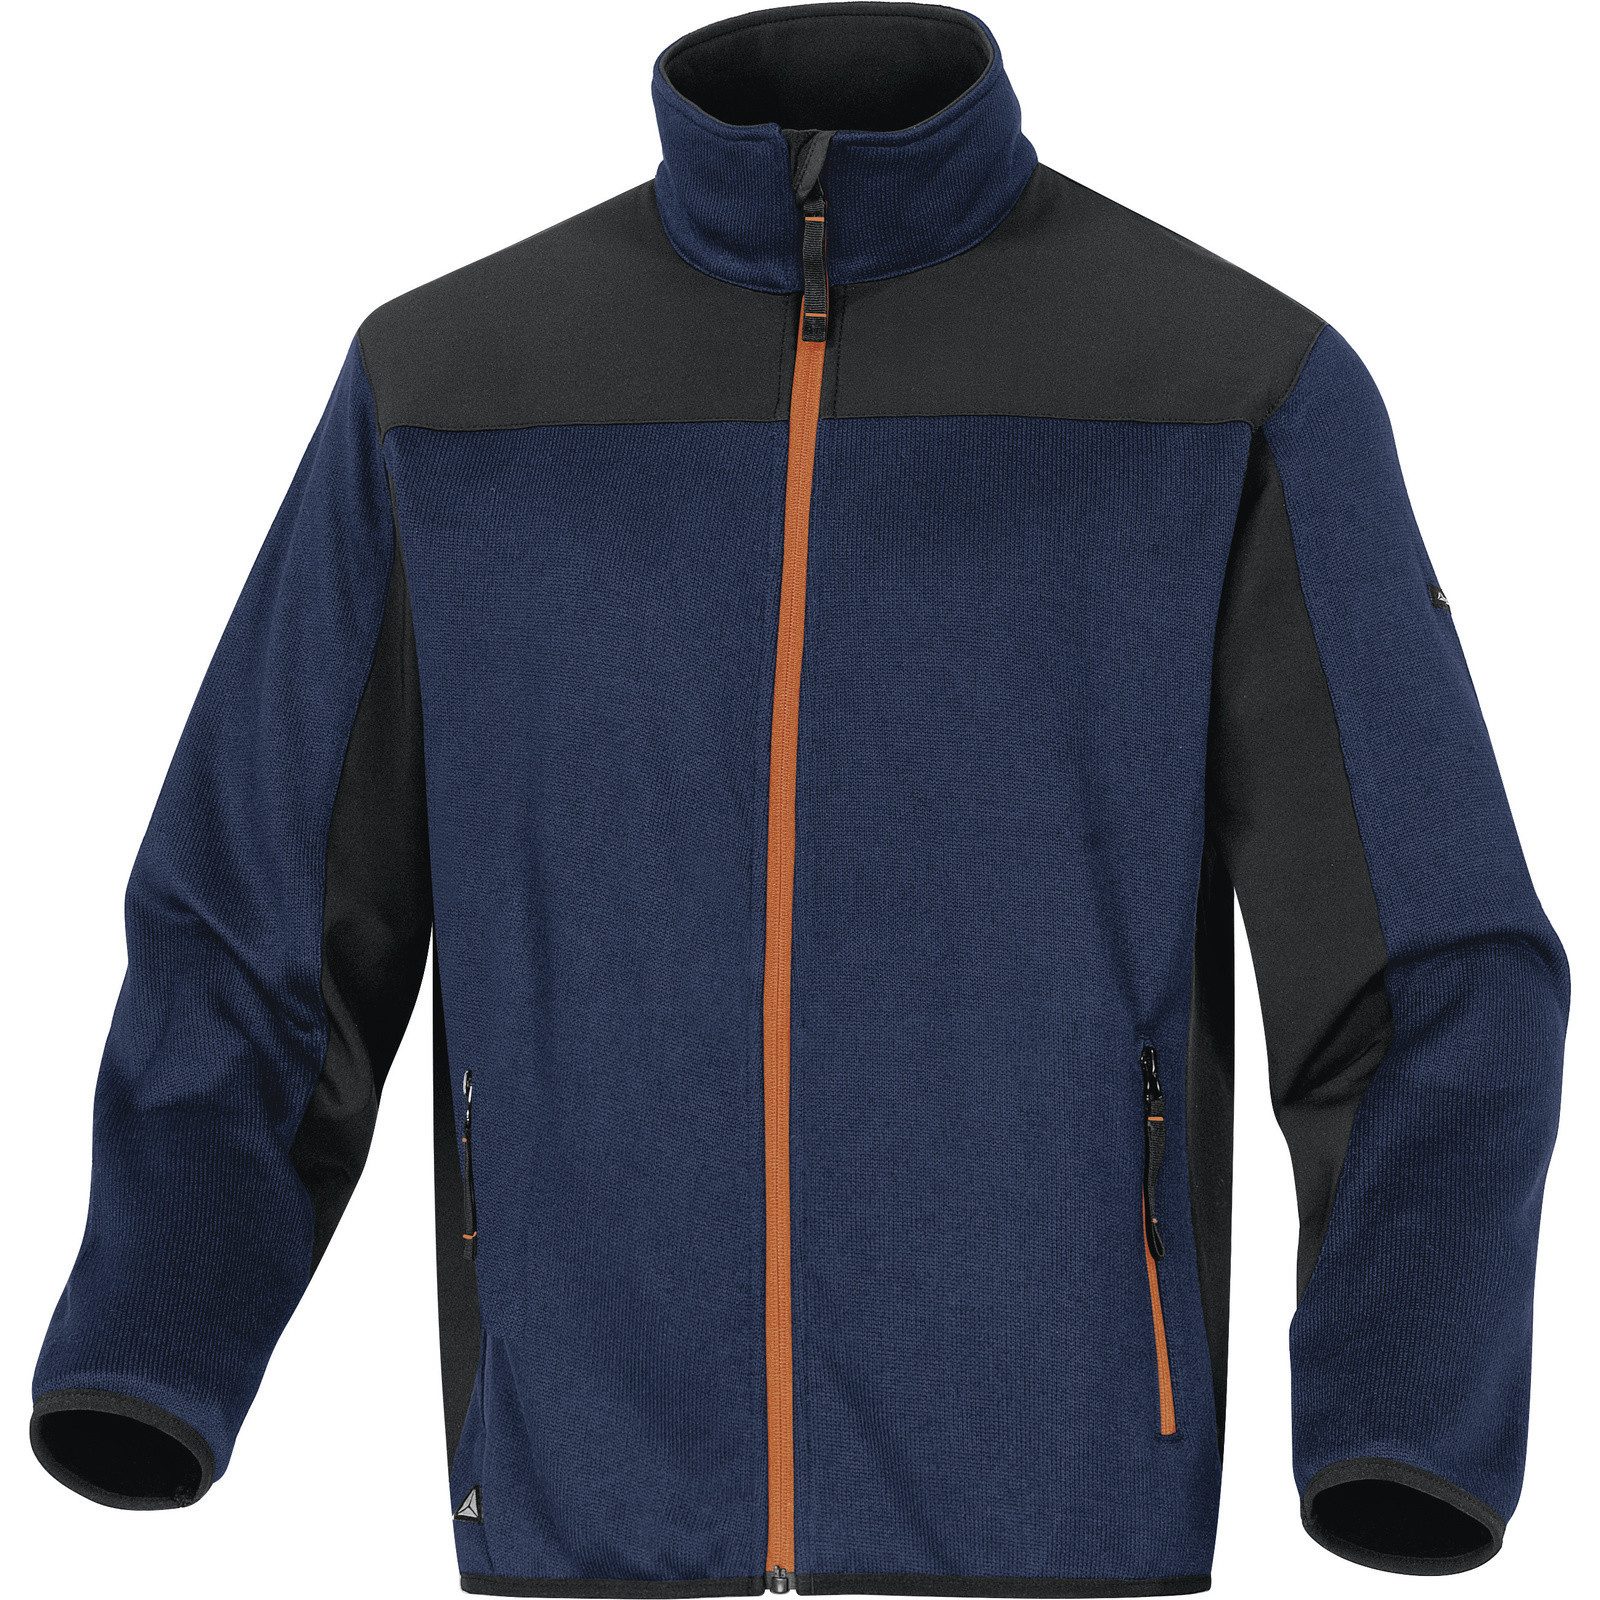 Softshellovo-pleteninová bunda Delta Plus Beaver - veľkosť: XL, farba: nám. modrá/oranžová